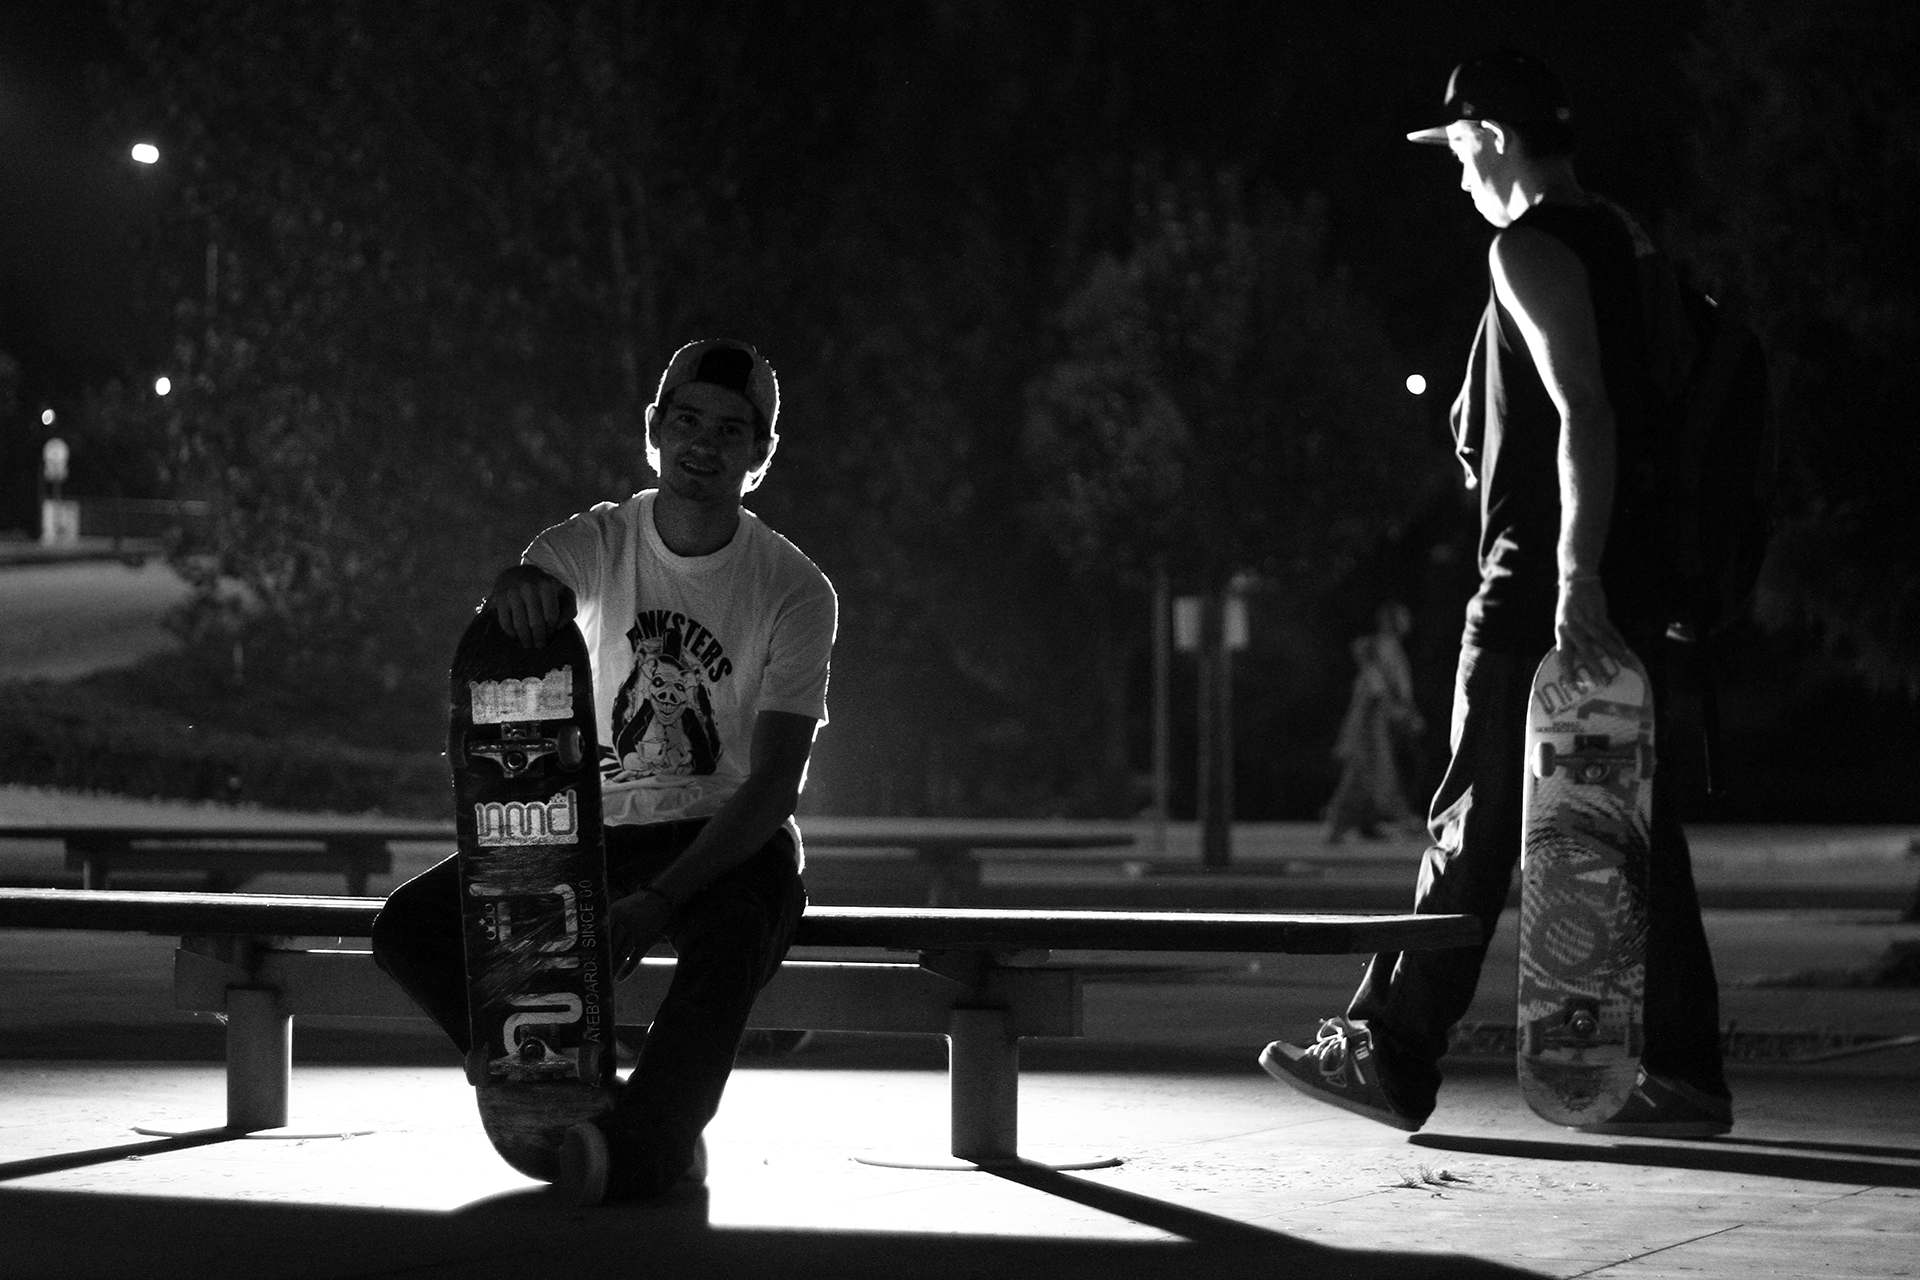 Skateboarding_Life_Renato_Lainho_com (15g)